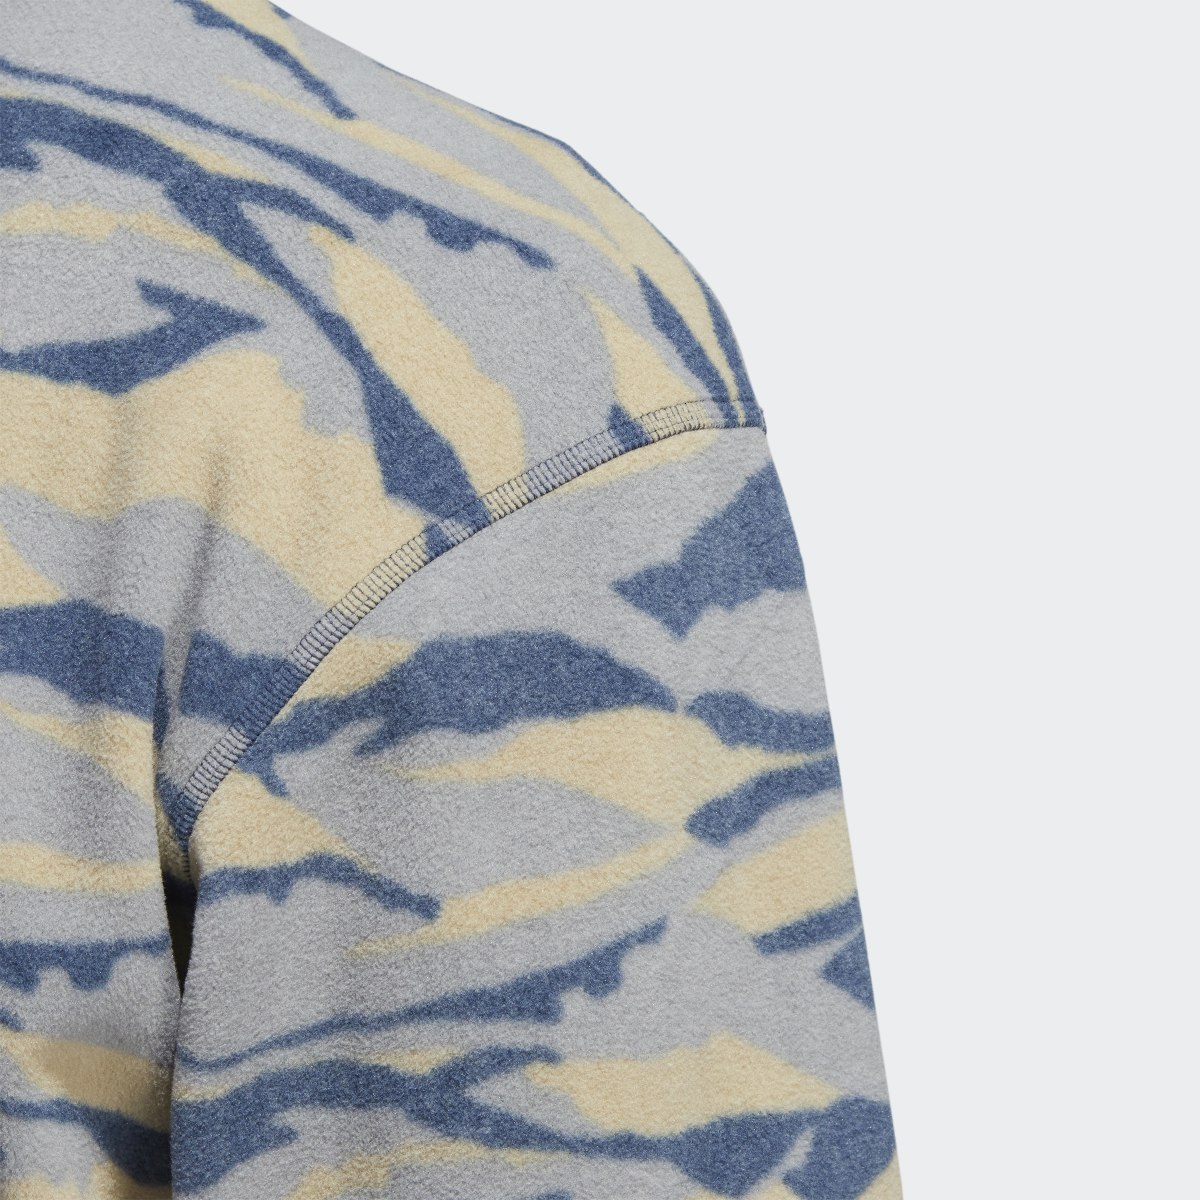 Adidas Sweat-shirt Texture-Print. 7